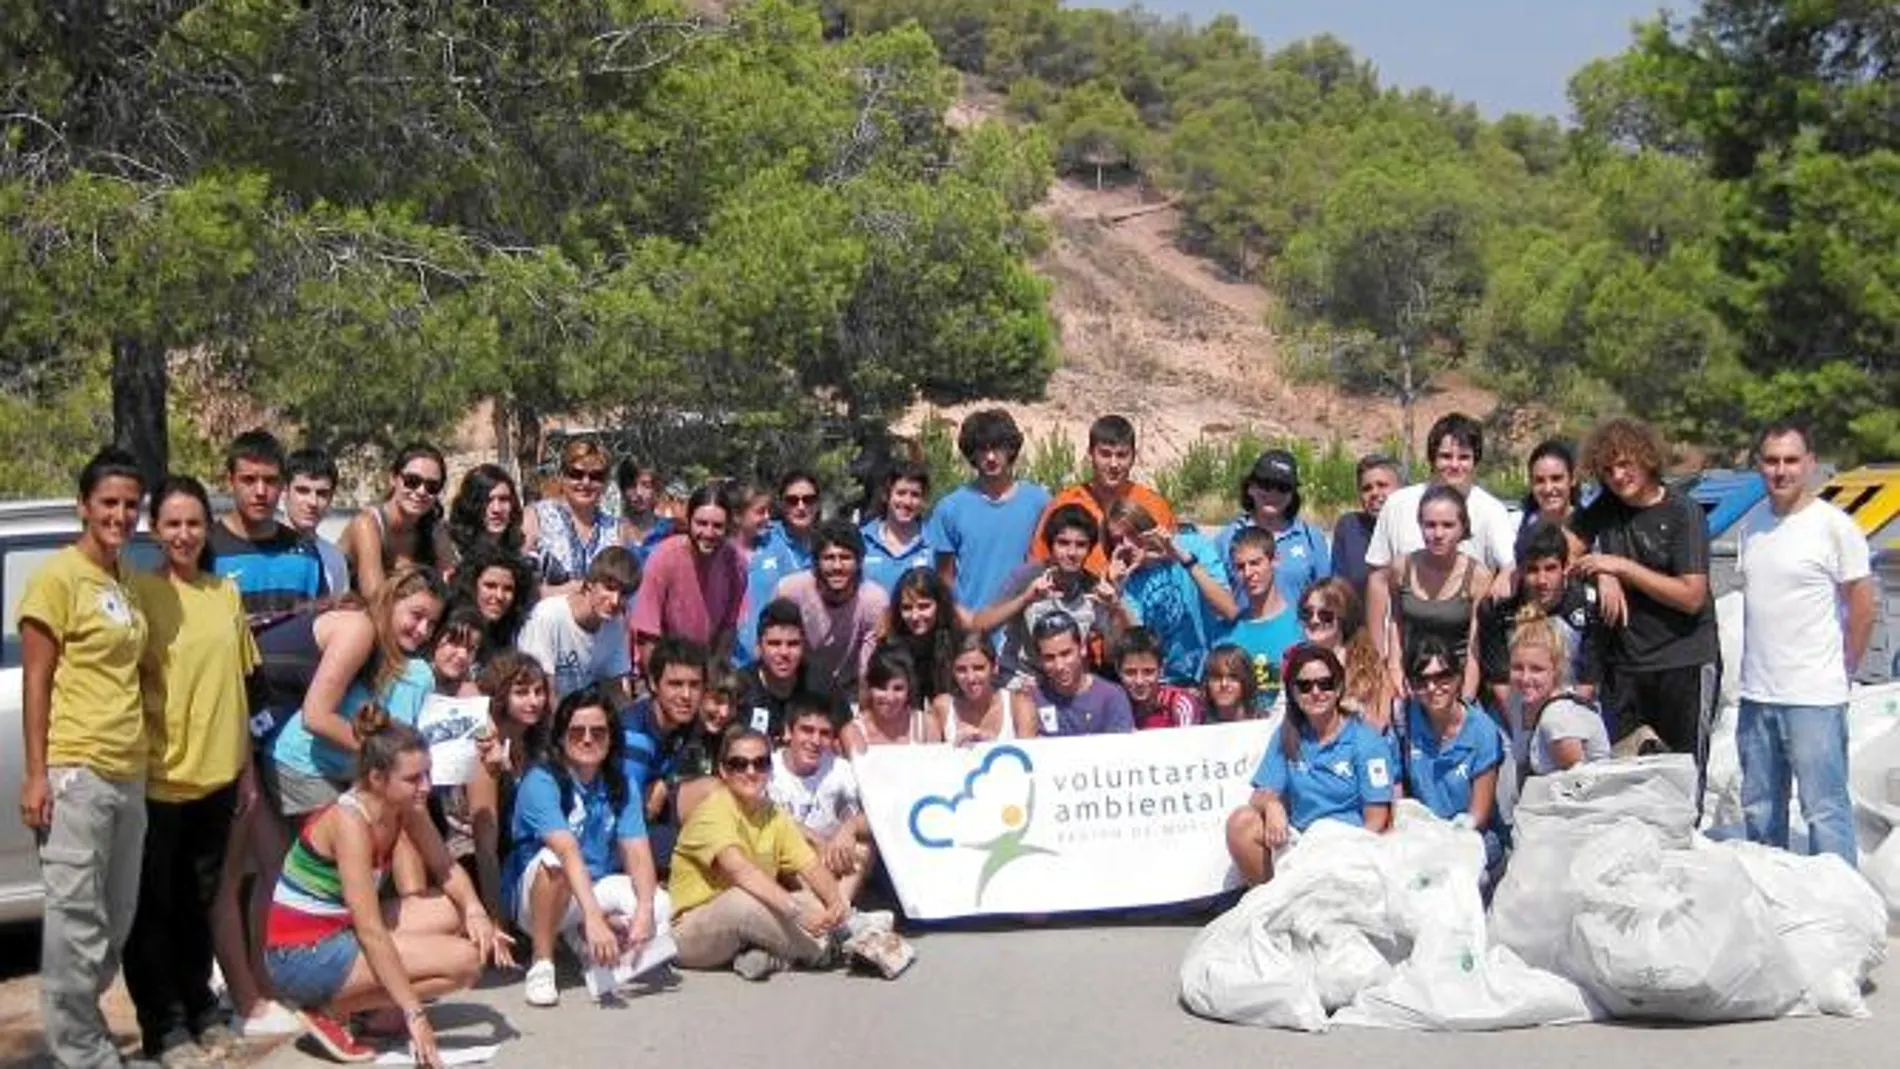 Un grupo de voluntarios que participaron ayer en la jornada sostenible realizada en Lorca e impulsada por una campaña mundial